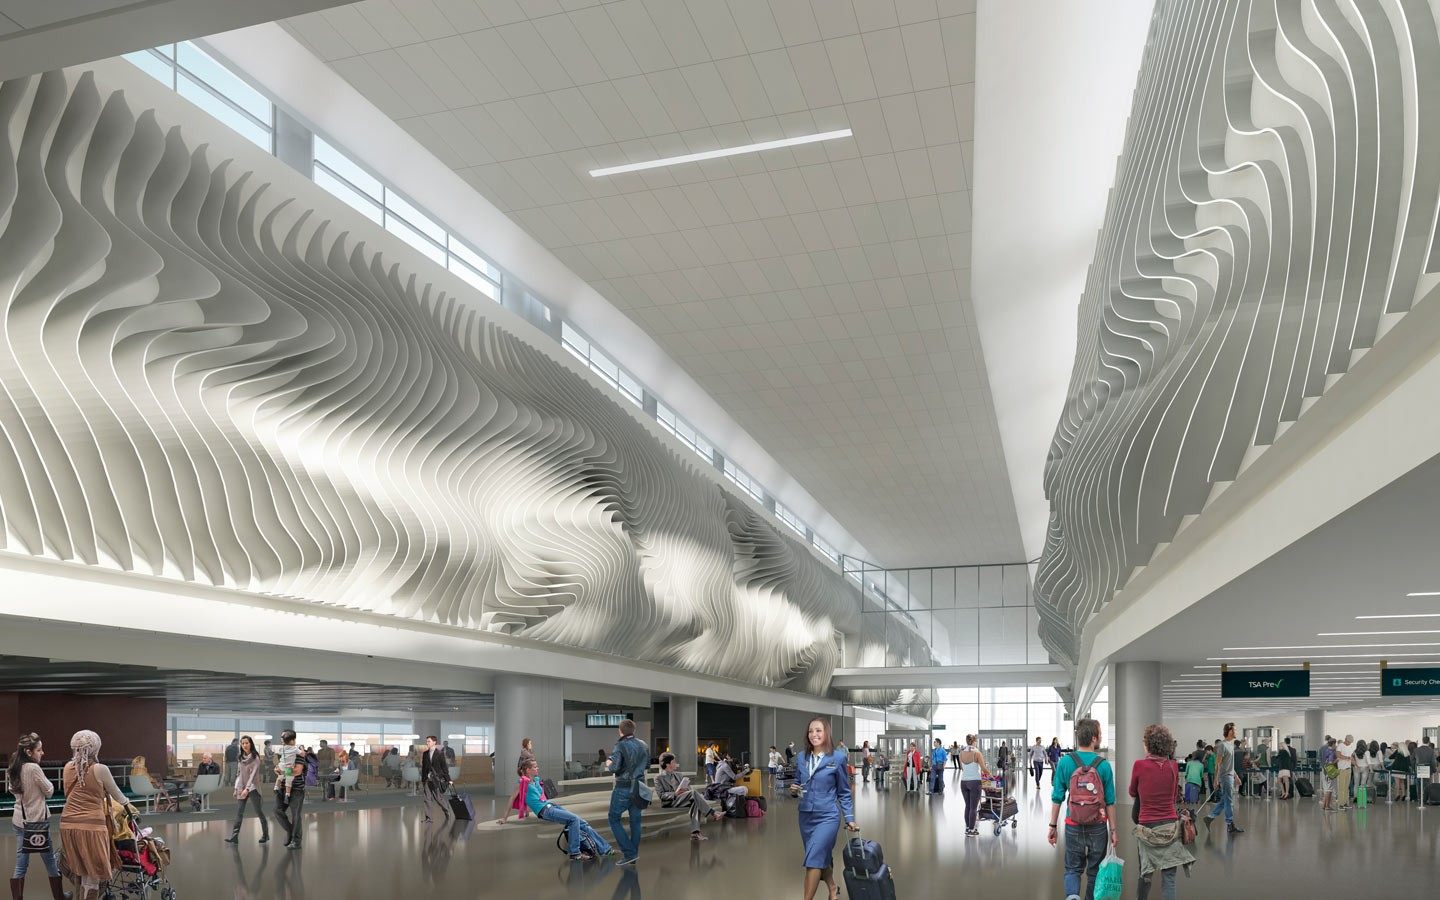 Planned Tensile Membrane Sculpture at Salt Lake City Airport